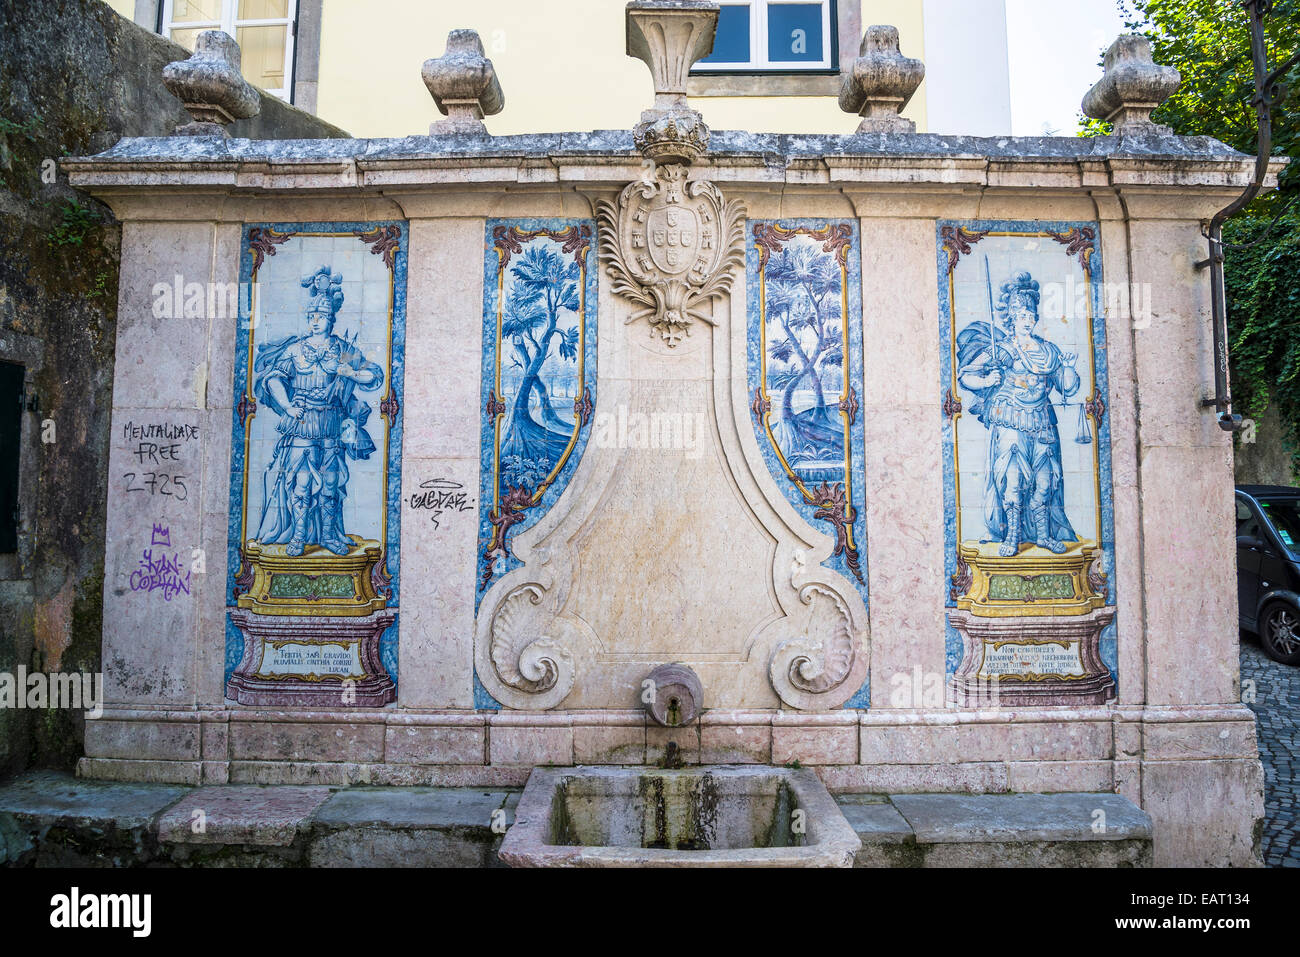 Fontaine historique avec tuiles azulejo, Sintra, Portugal Banque D'Images